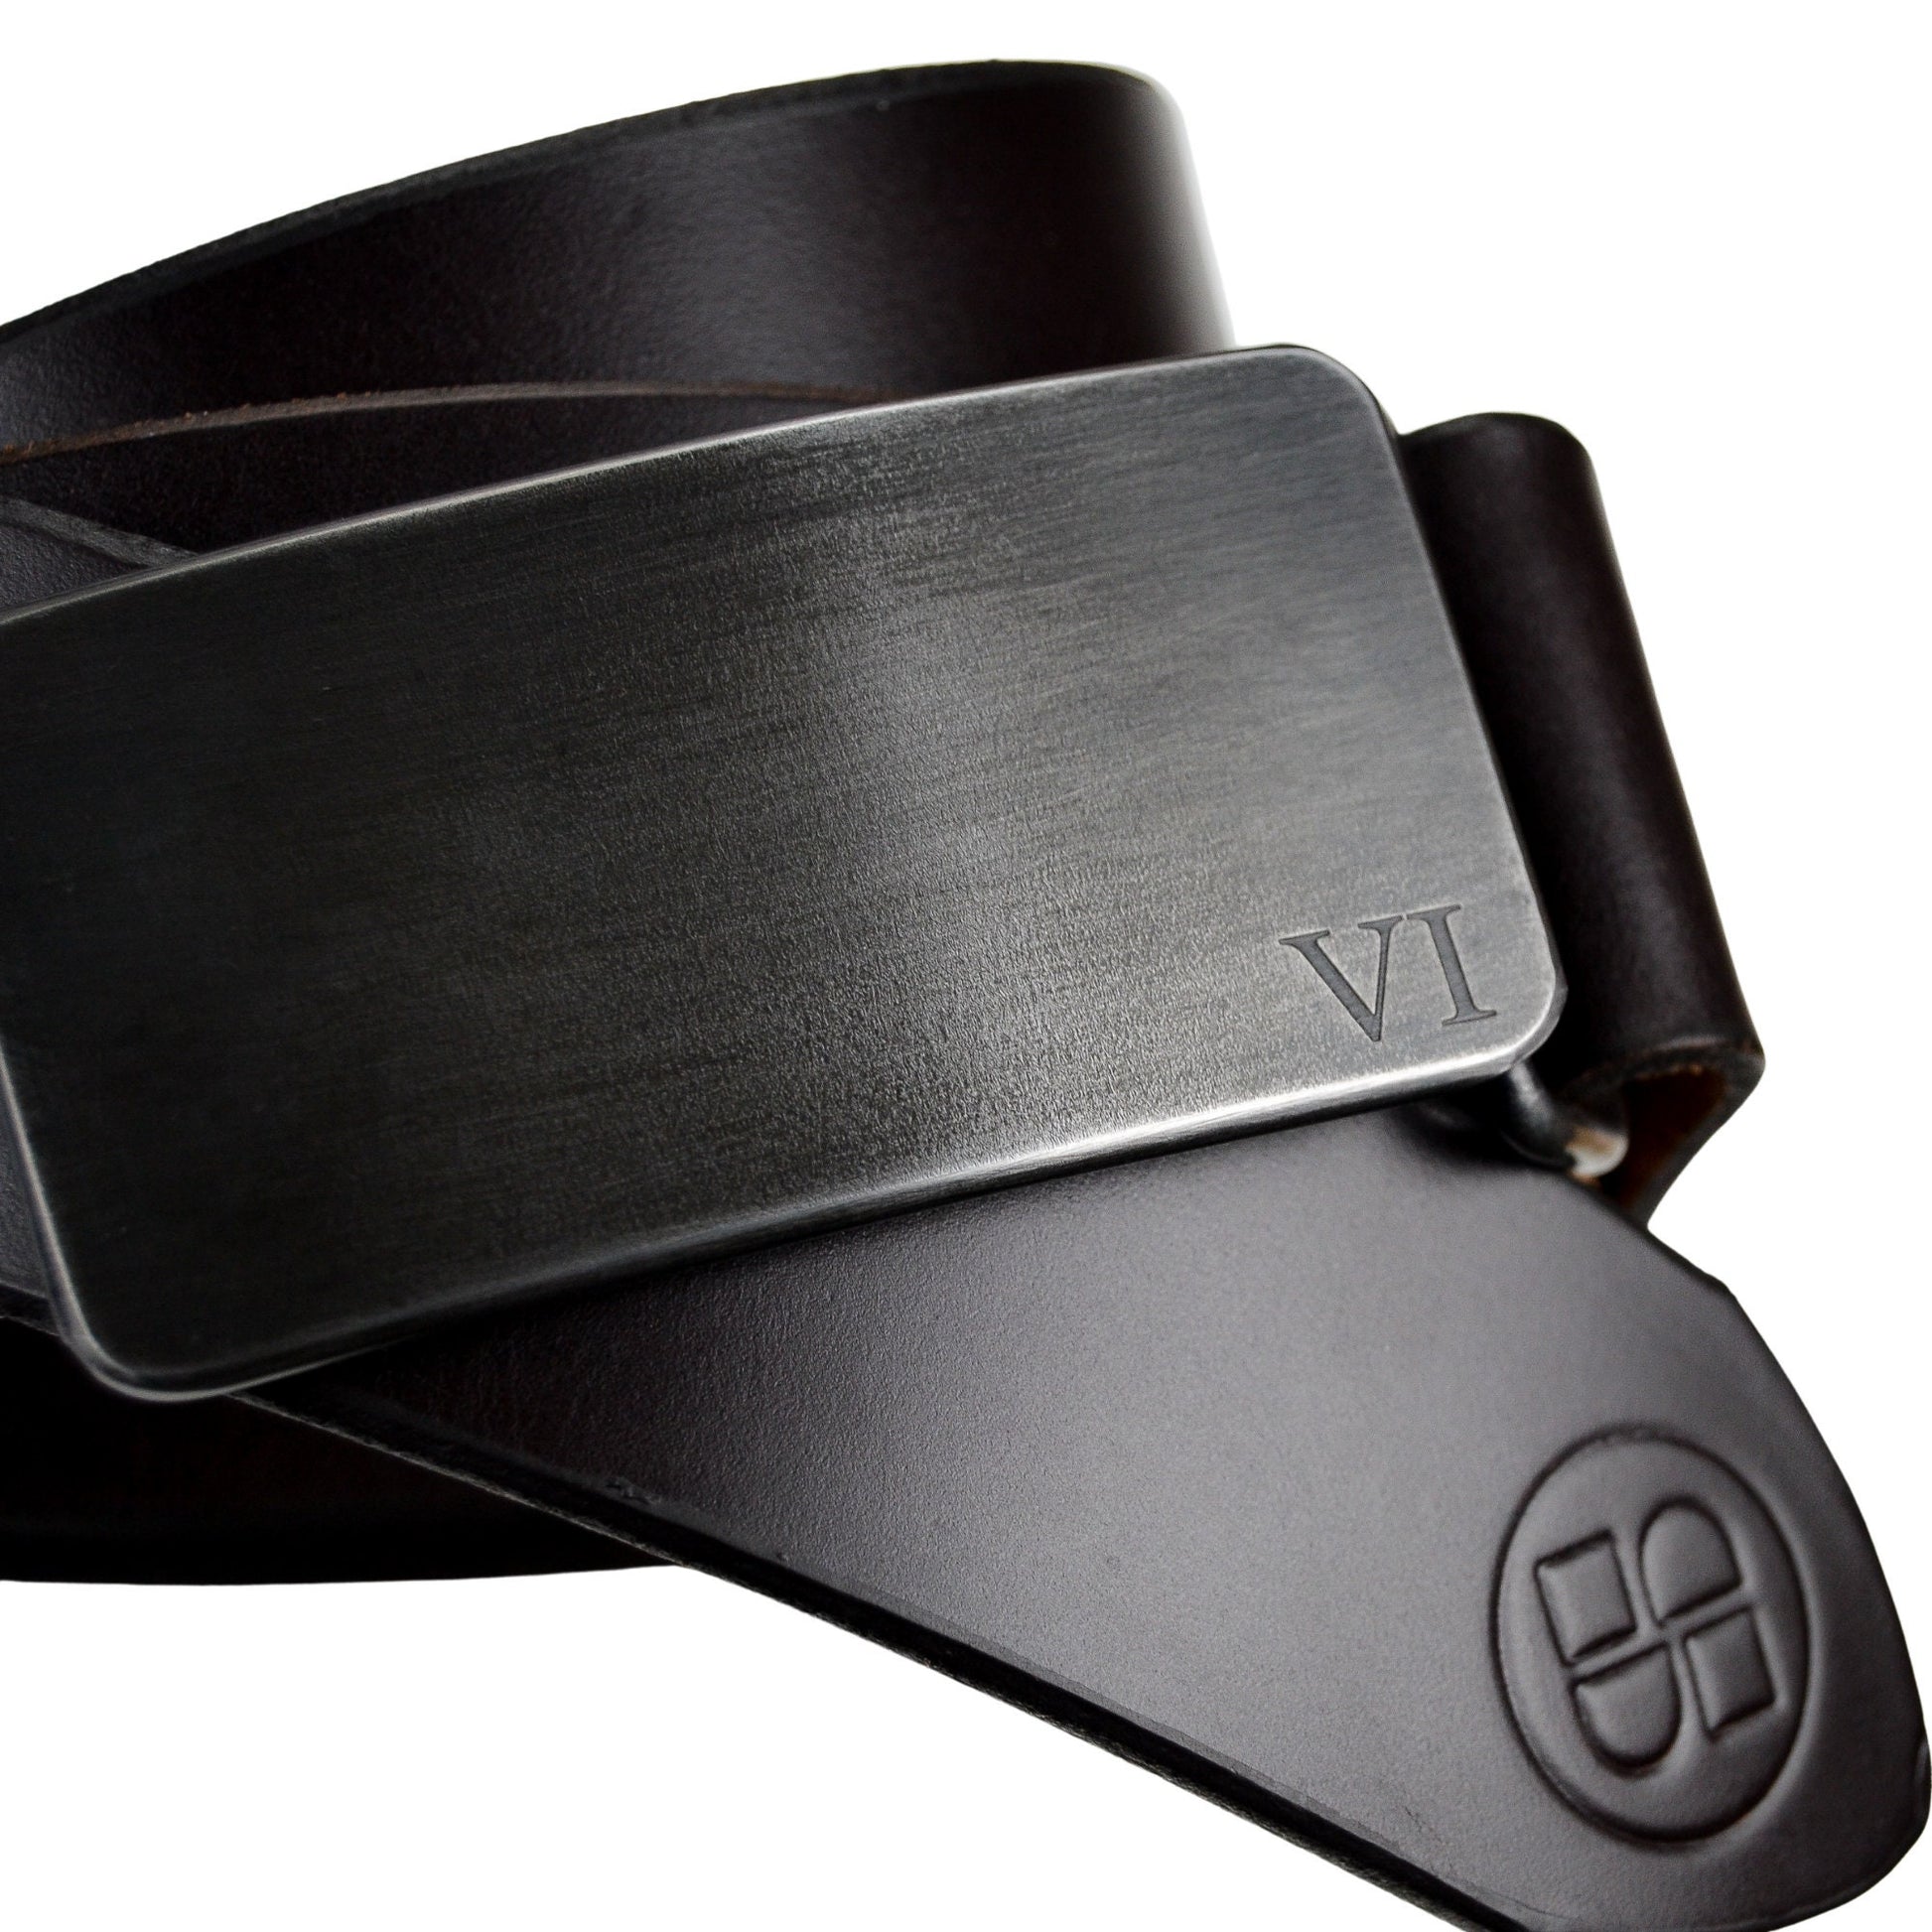 Black Leather Belt, Handmade in Seattle